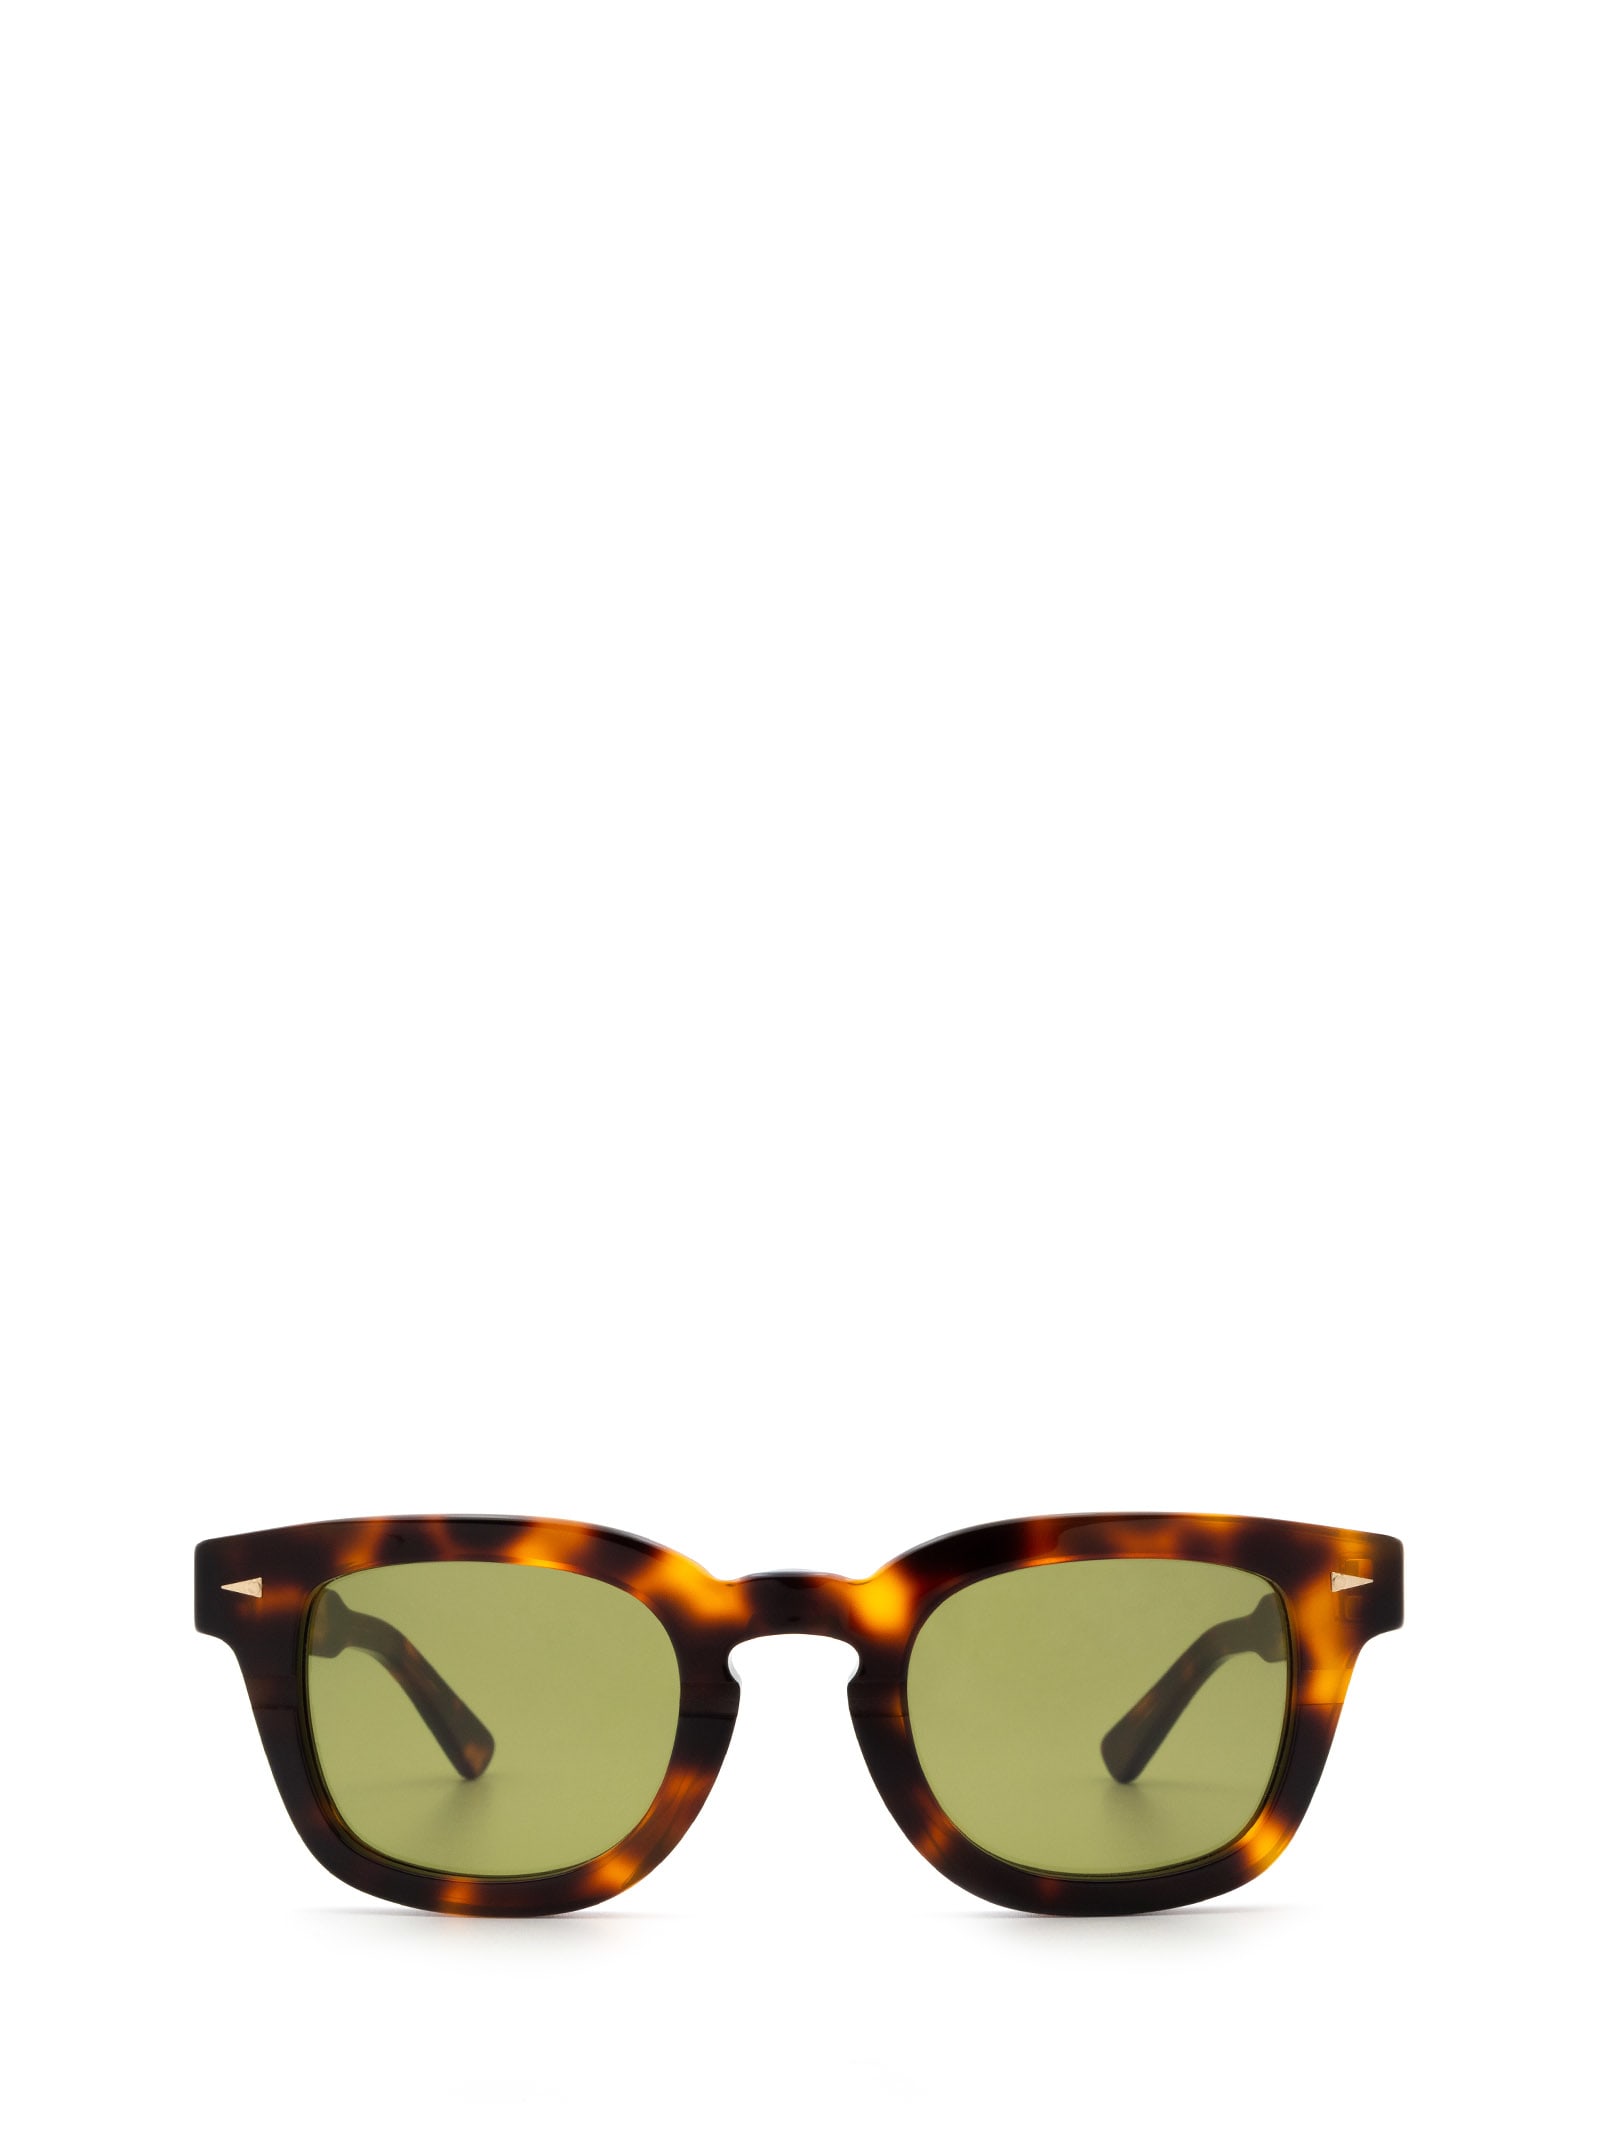 AHLEM Ahlem Champ De Mars Classic Turtle Sunglasses